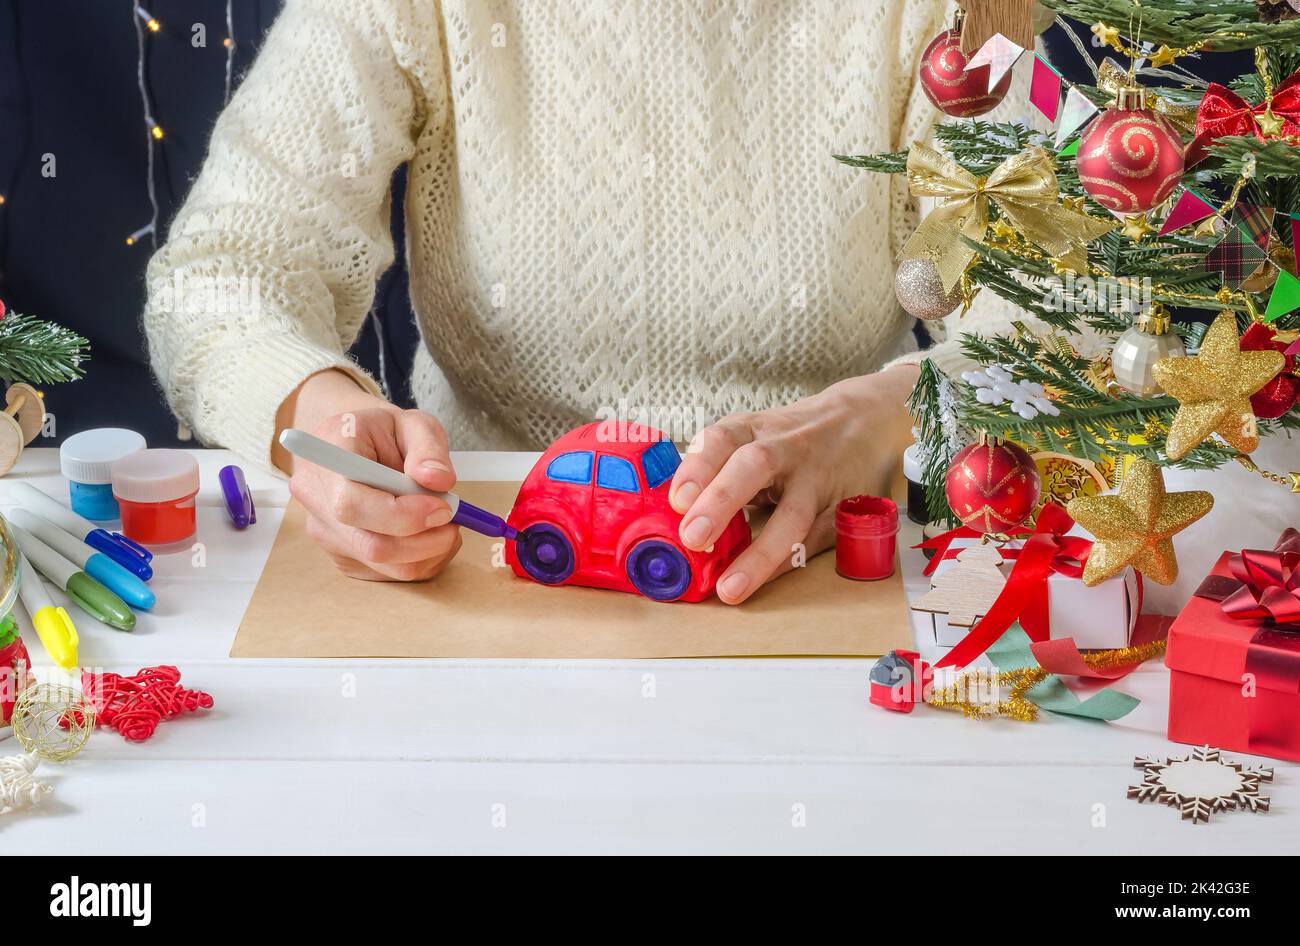 Schritt-für-Schritt Foto-Anleitung für Weihnachten Dekor - ein Mädchen malt eine Gipsmaschine, Schritt 5 - Färbung der Räder mit einem Filzstift Stockfoto